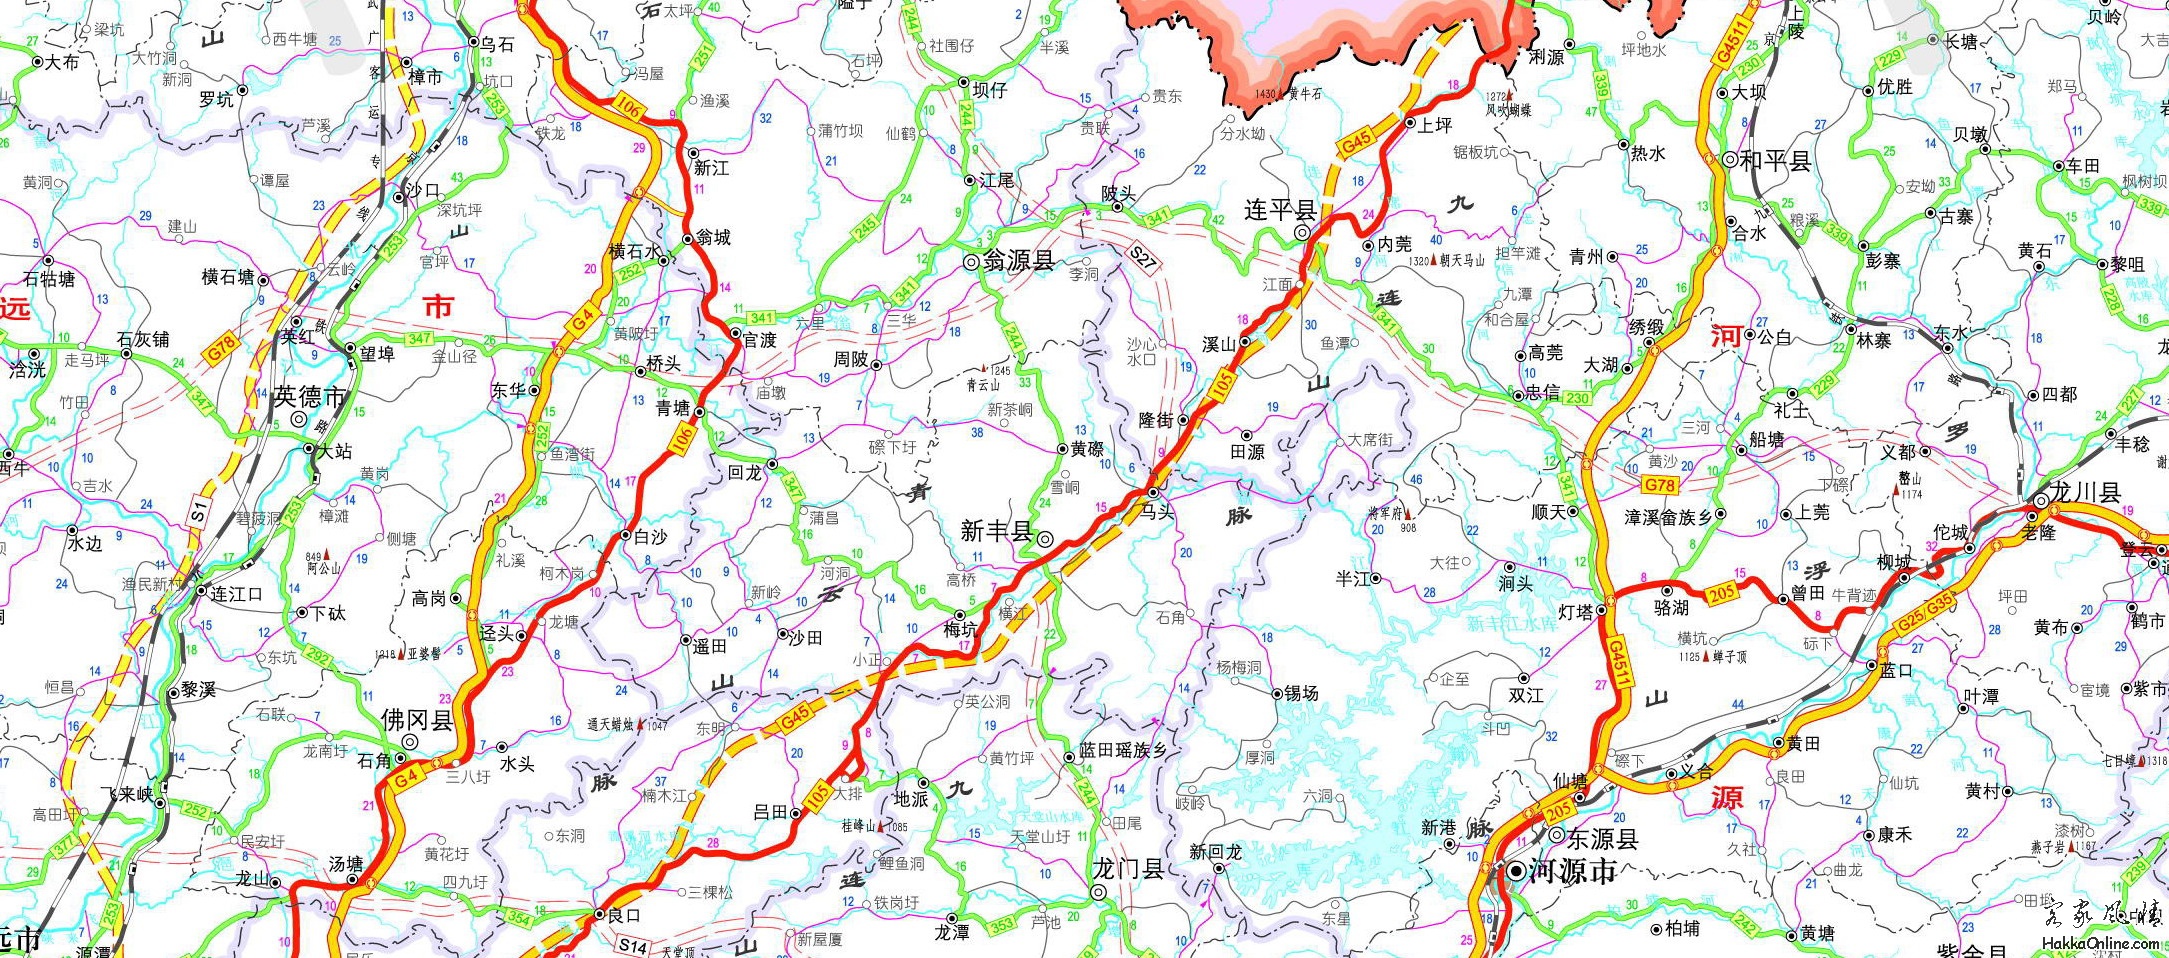 汕昆高速公路龙川至英德段是客家连片分布区域(2009年11月图).jpg